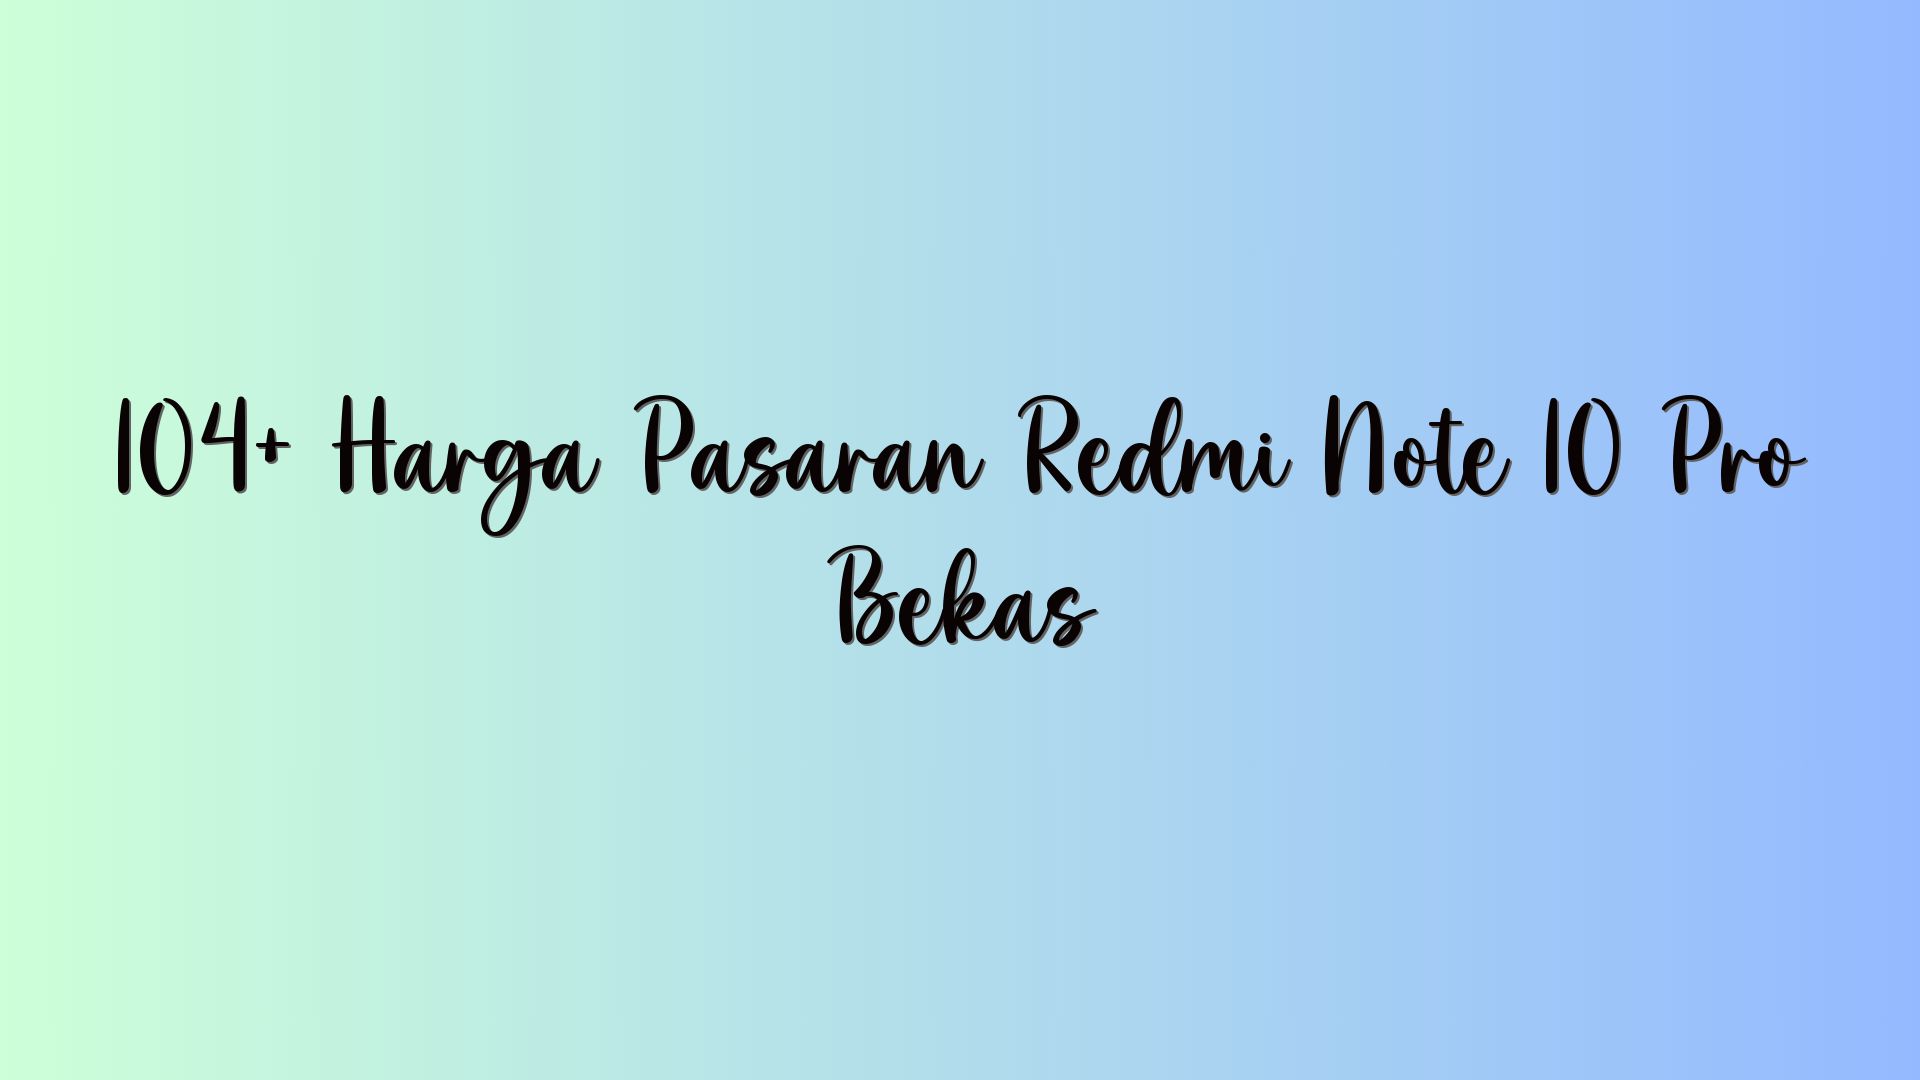 104+ Harga Pasaran Redmi Note 10 Pro Bekas